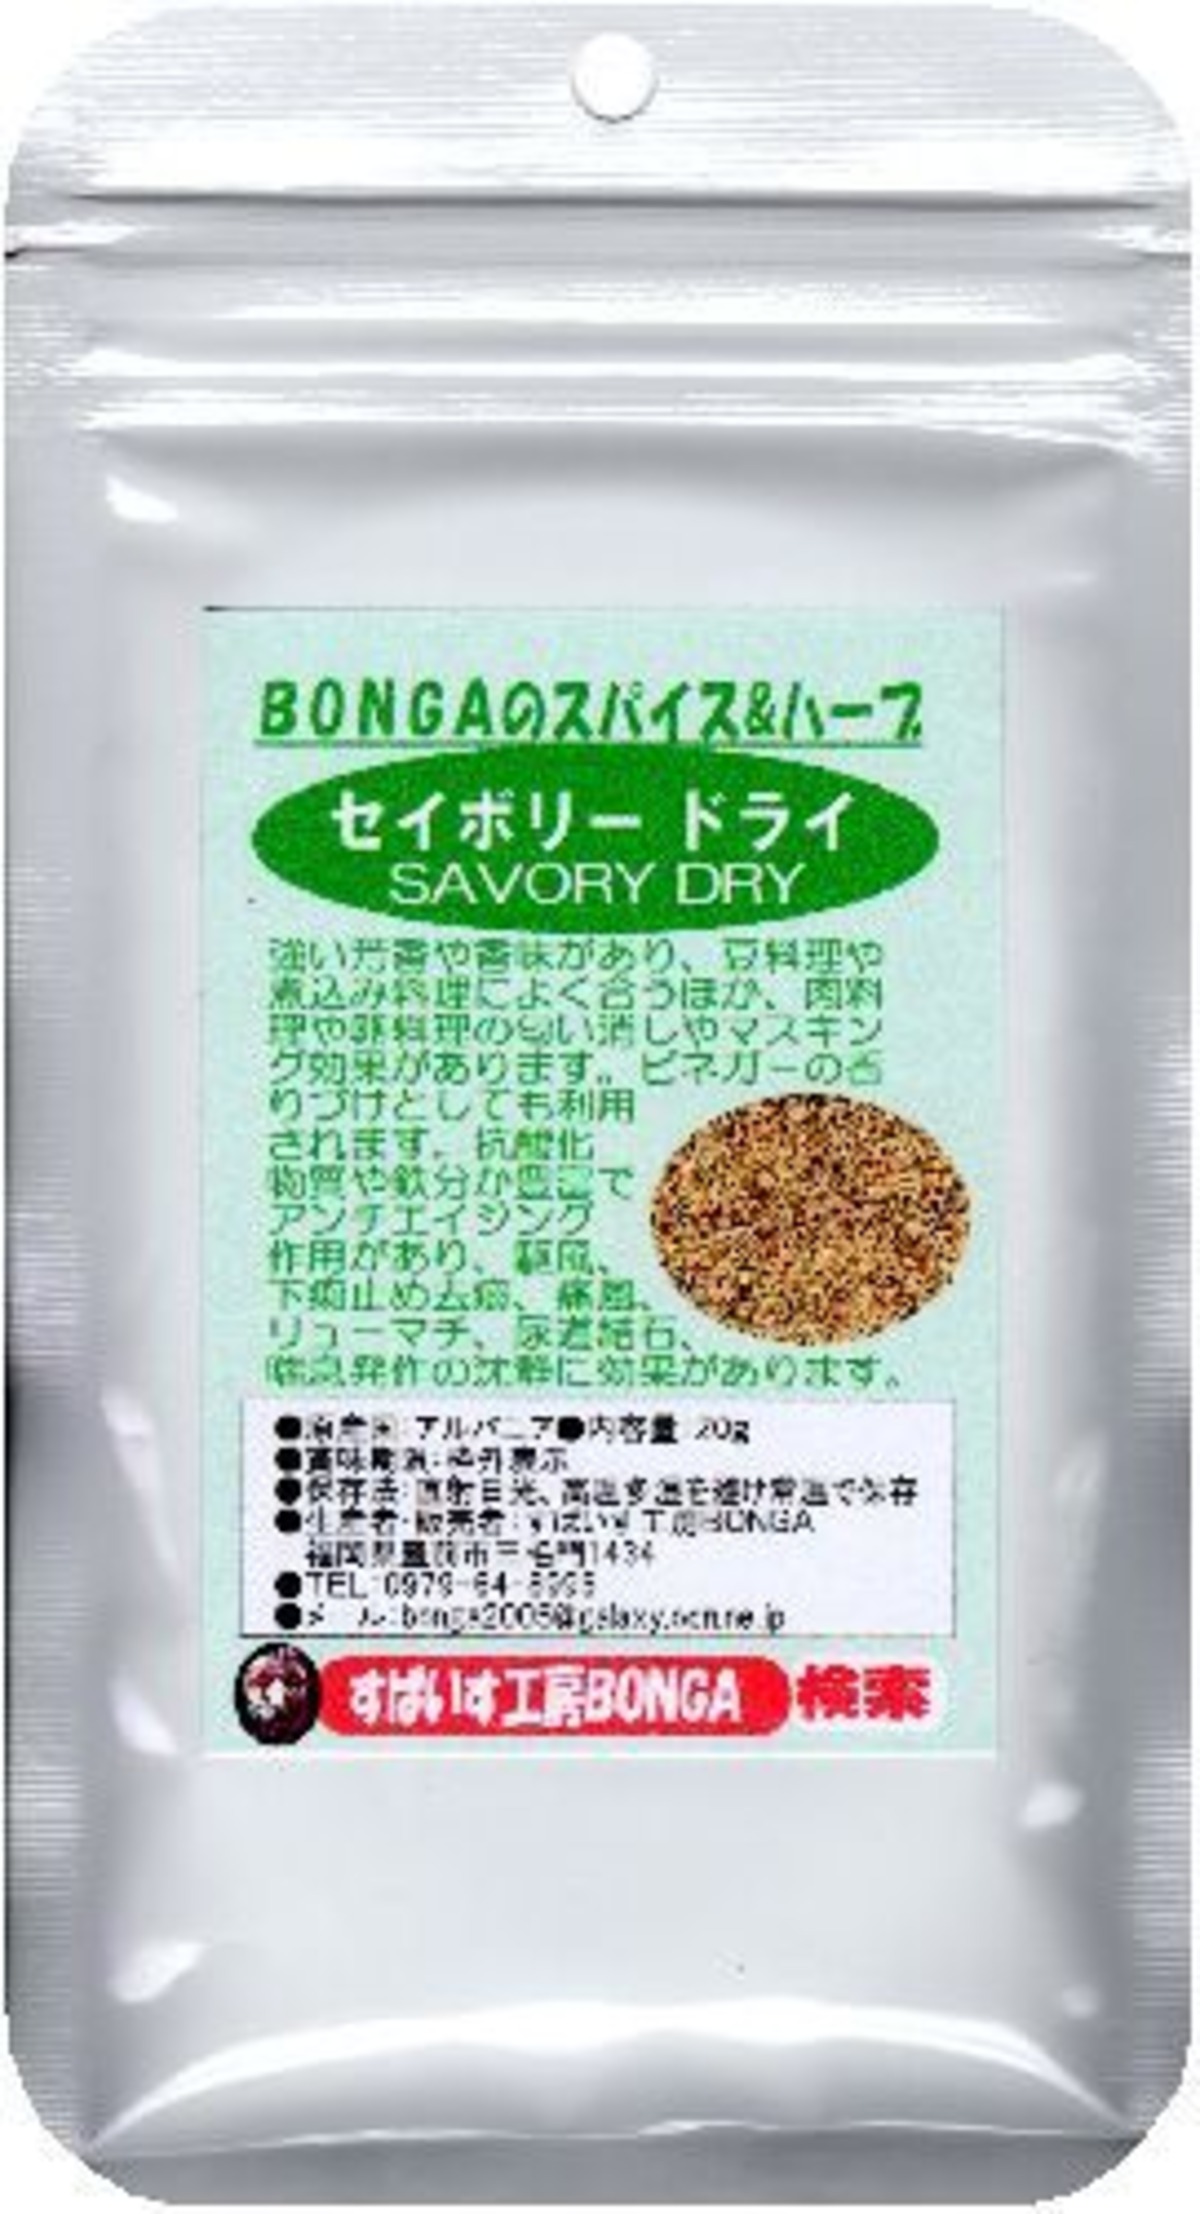 セイボリー キダチハッカ g 豆のハーブ と呼ばれ豆料理やスープに 全国送料無料でポスティング すぱいす工房bonga